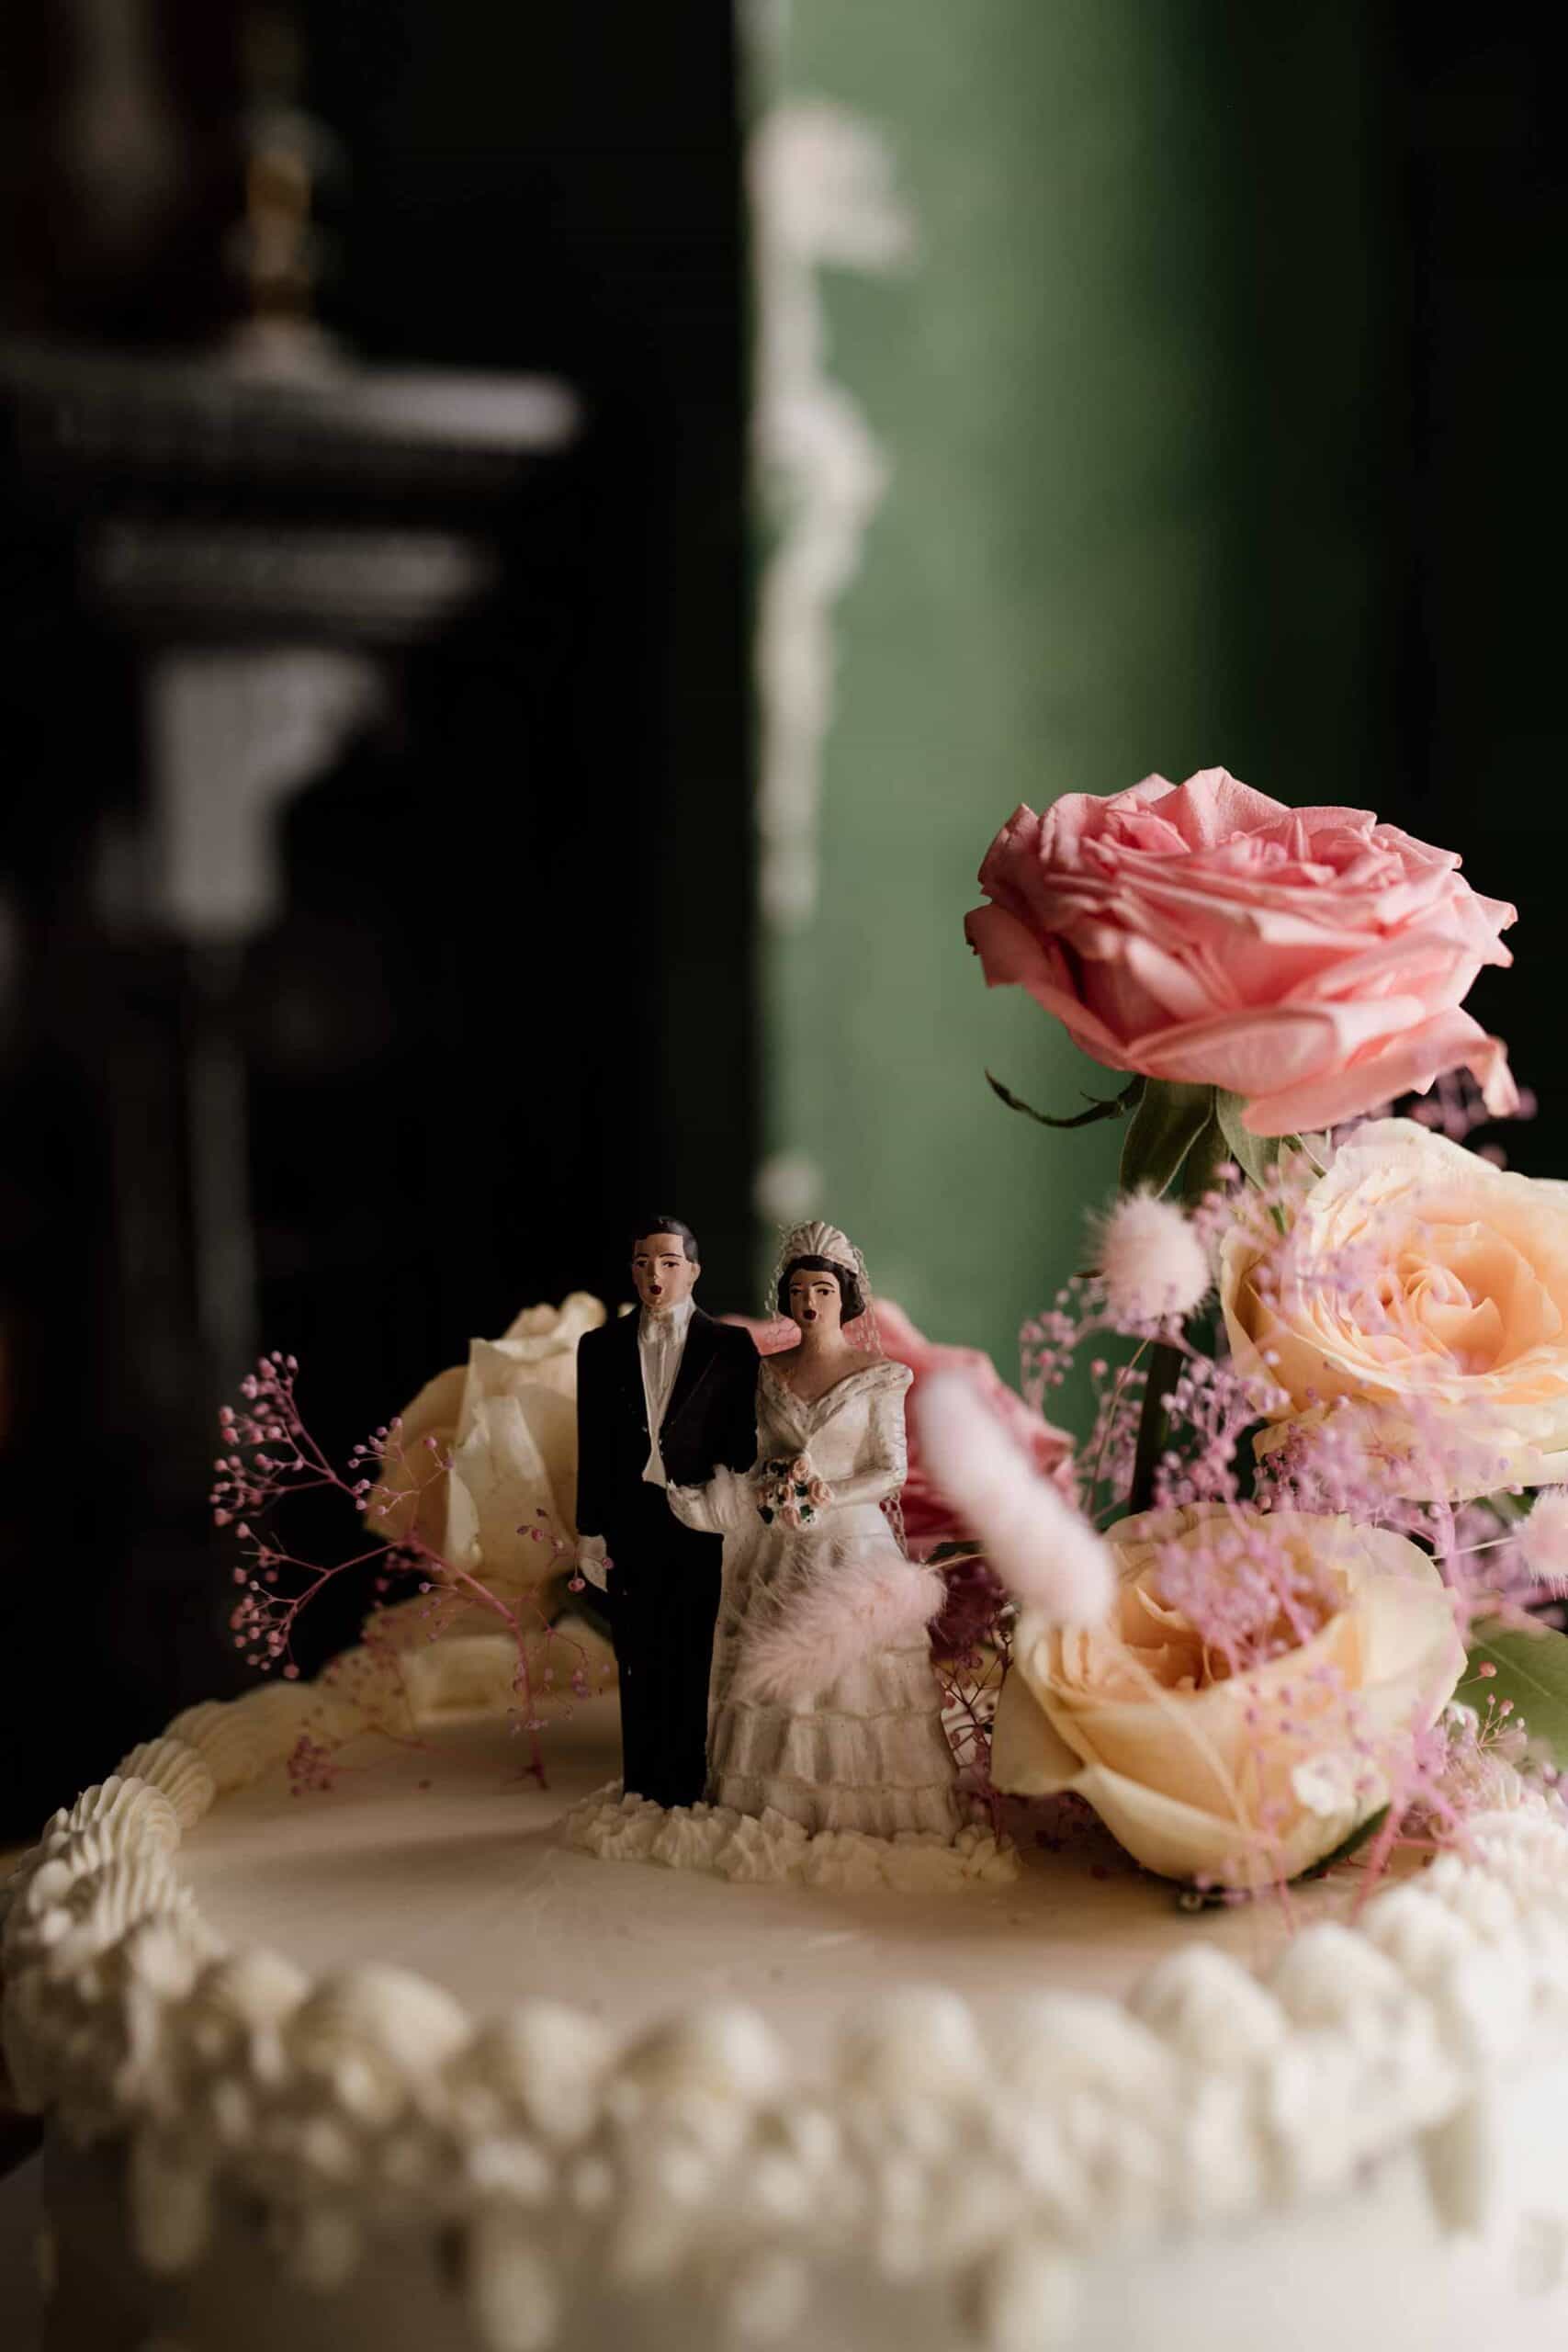 cute vintage wedding cake